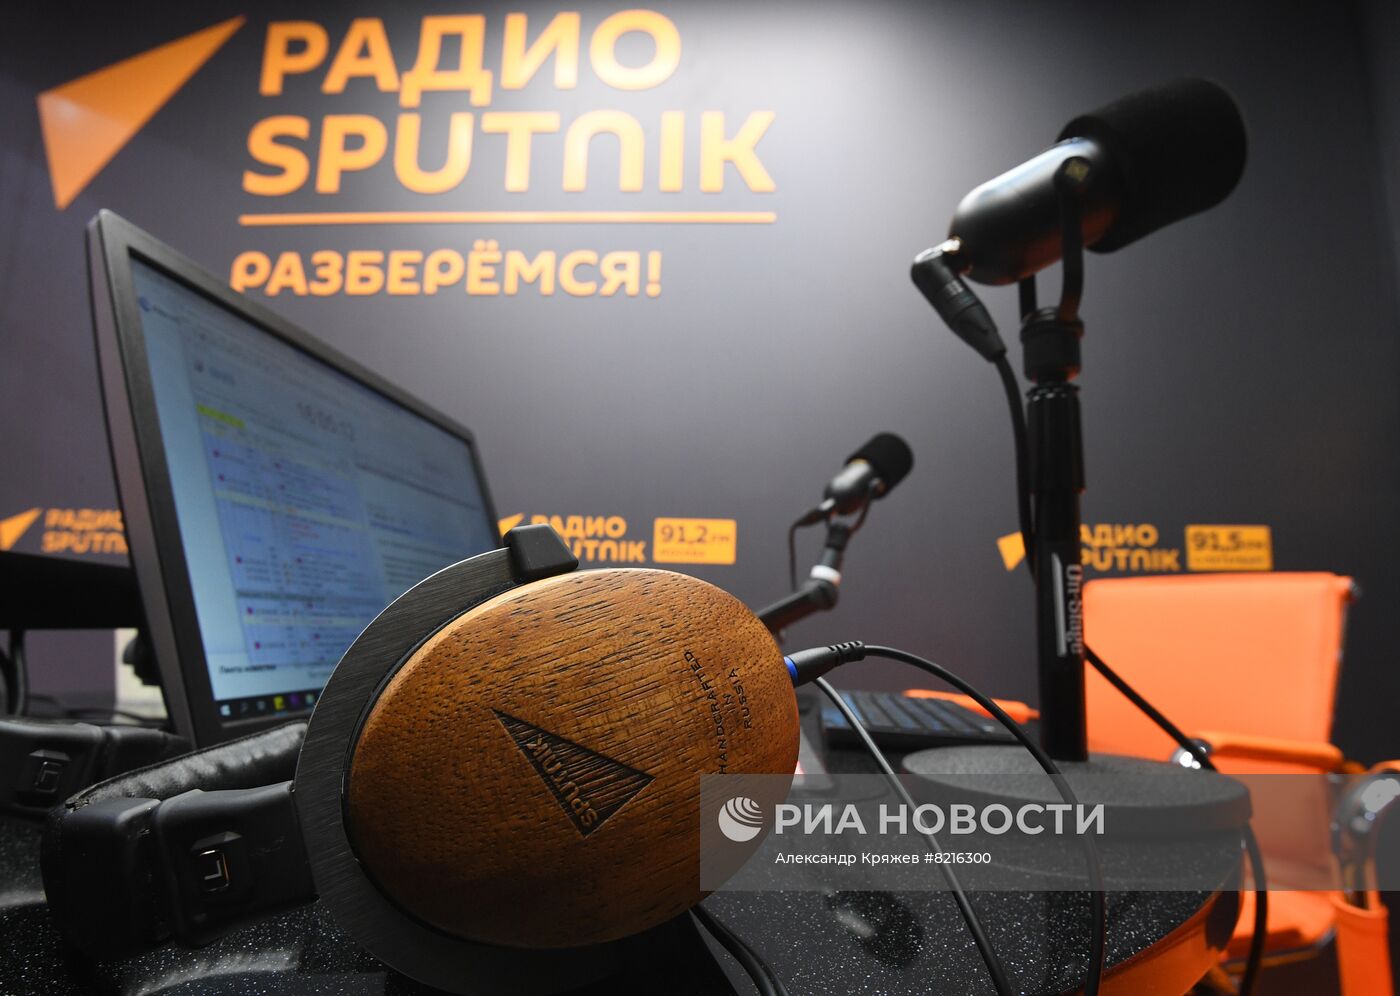 ПМЭФ-2022. Работа студии радио Sputnik